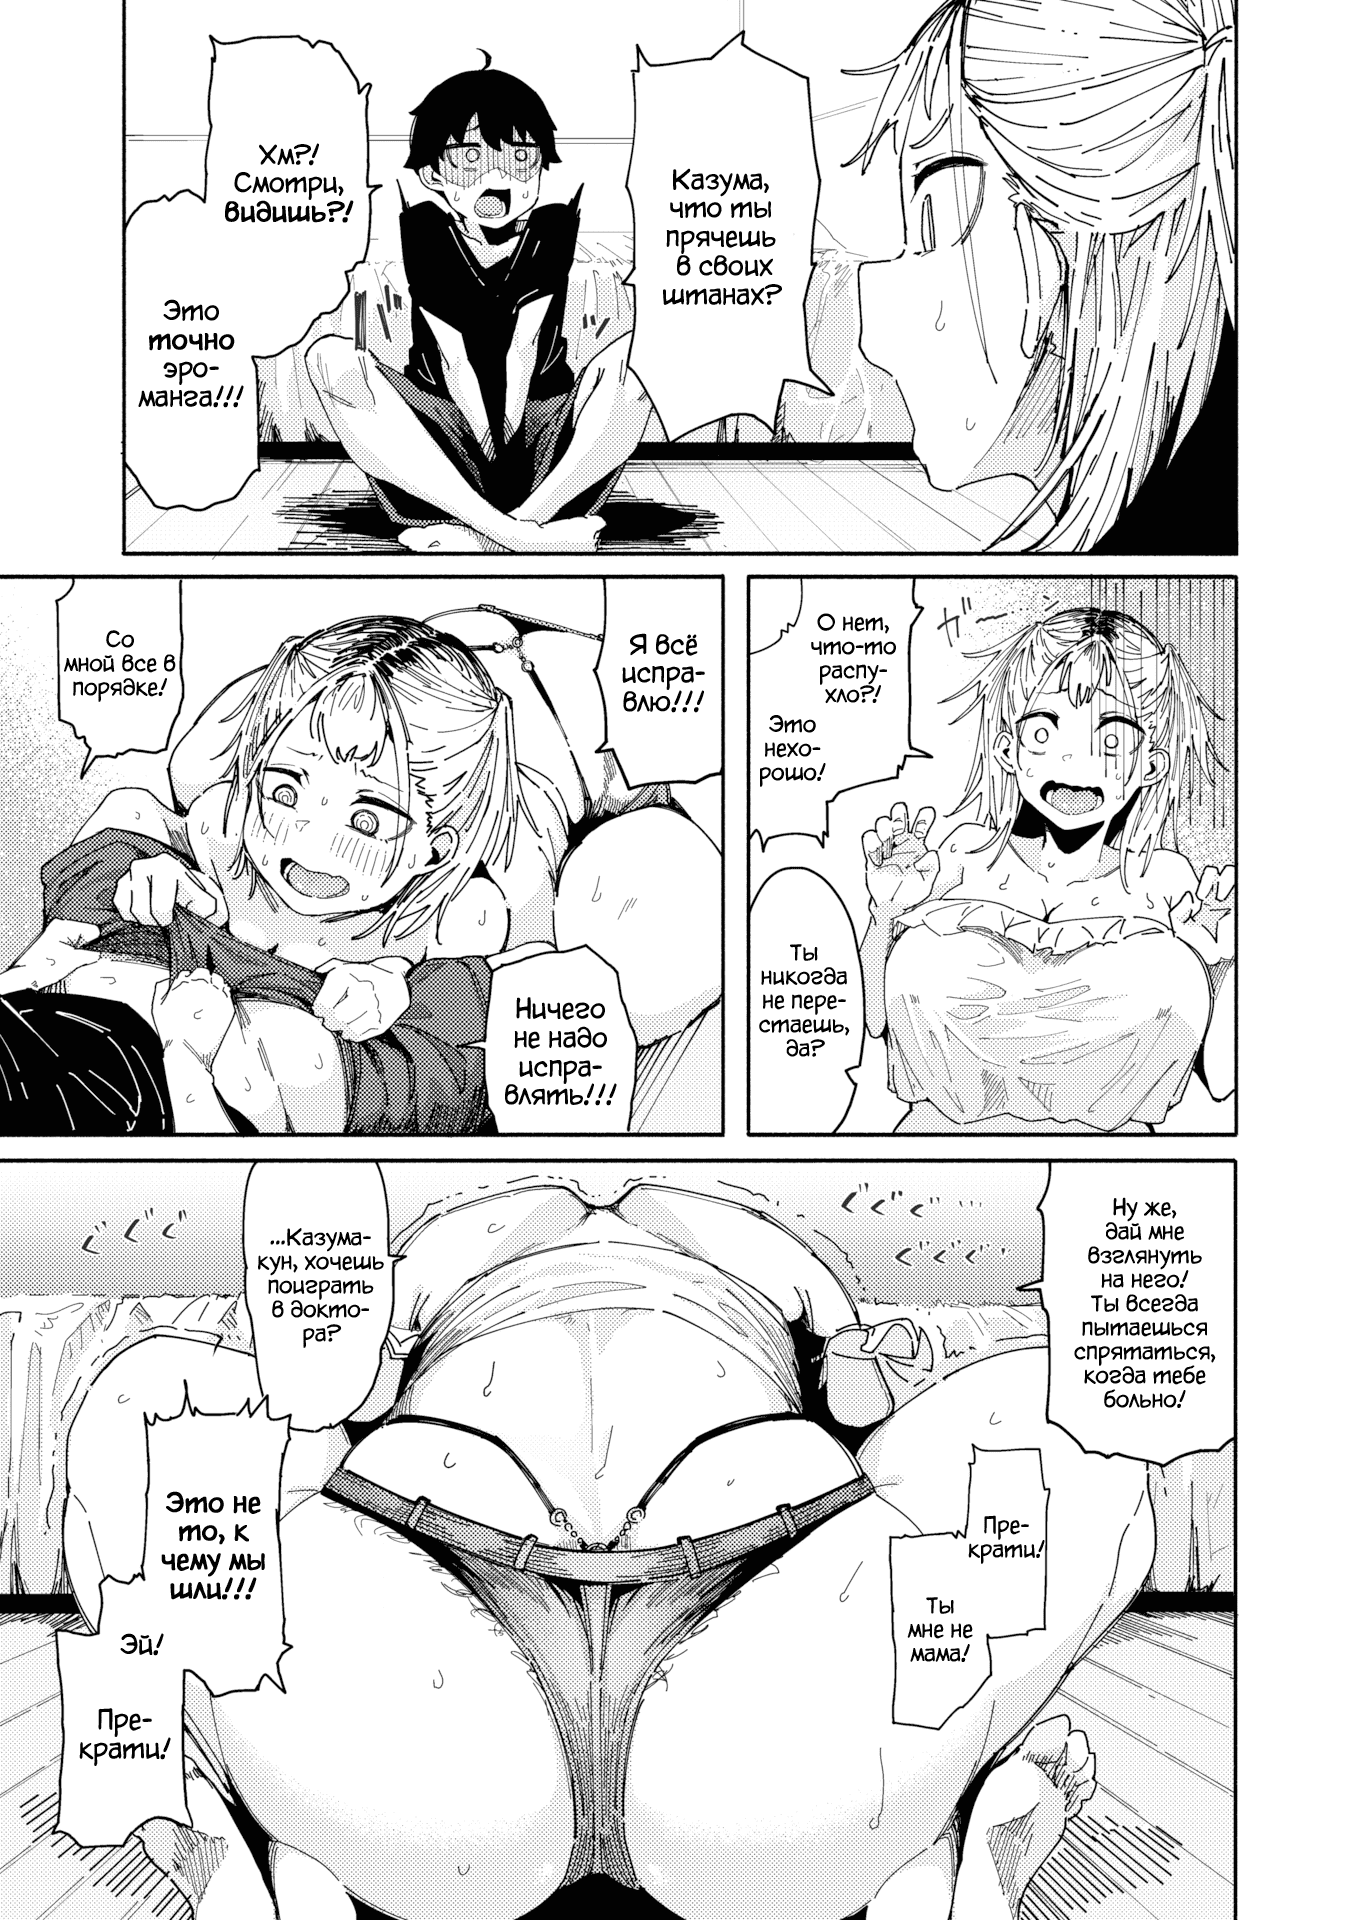 Dibujos eroticos manga